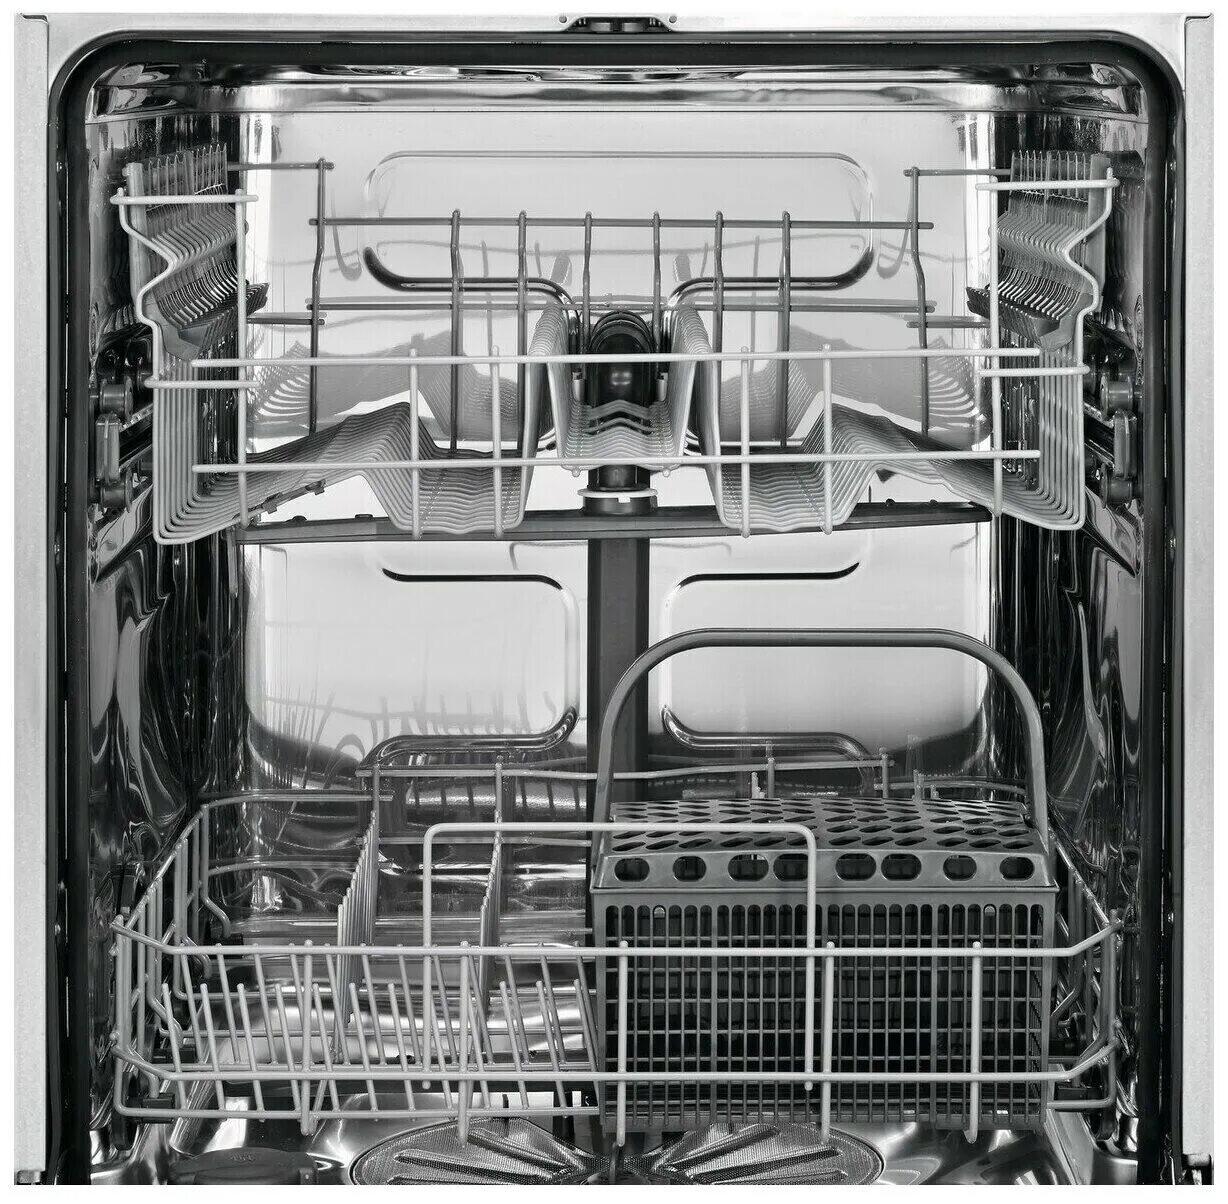 Посудомоечной машинки электролюкс. Eea917100l Electrolux посудомоечная. Посудомоечная машина Zanussi ZDF 26004 xa. Посудомоечная машина Electrolux ESF 9552 Lox. Посудомоечная машина Electrolux ESL 95324 lo.